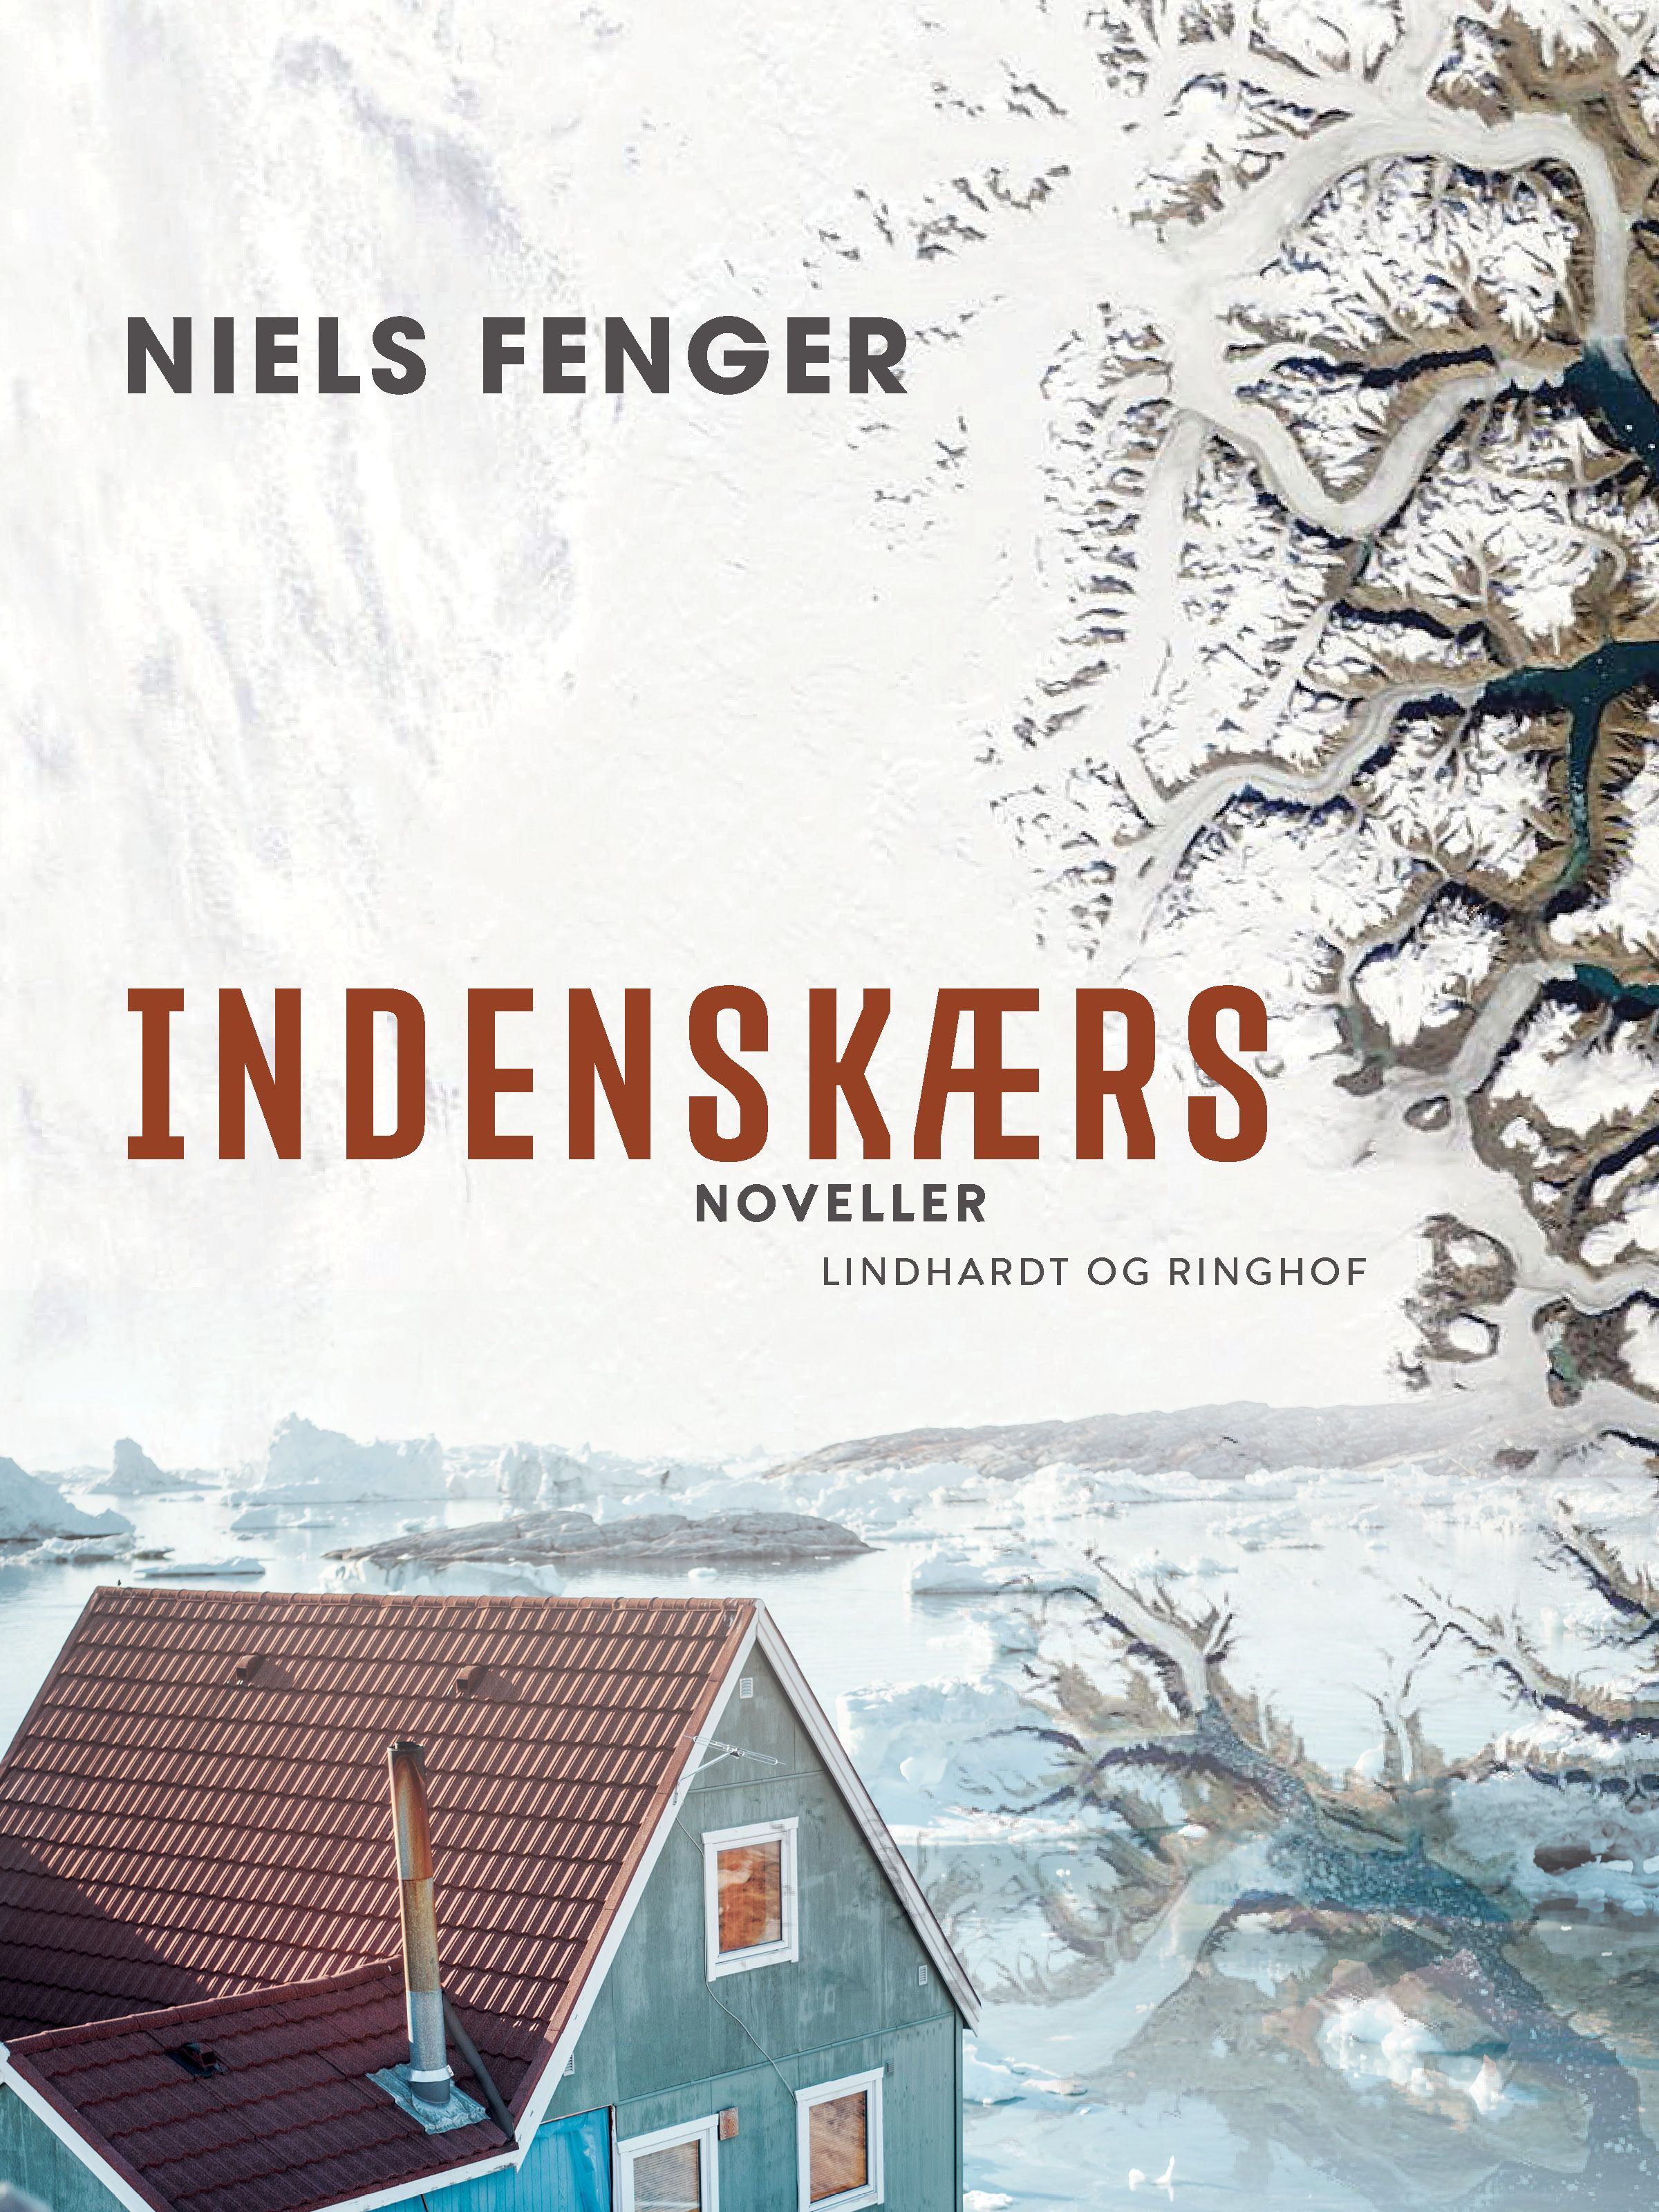 Indenskærs, e-bog af Niels Fenger